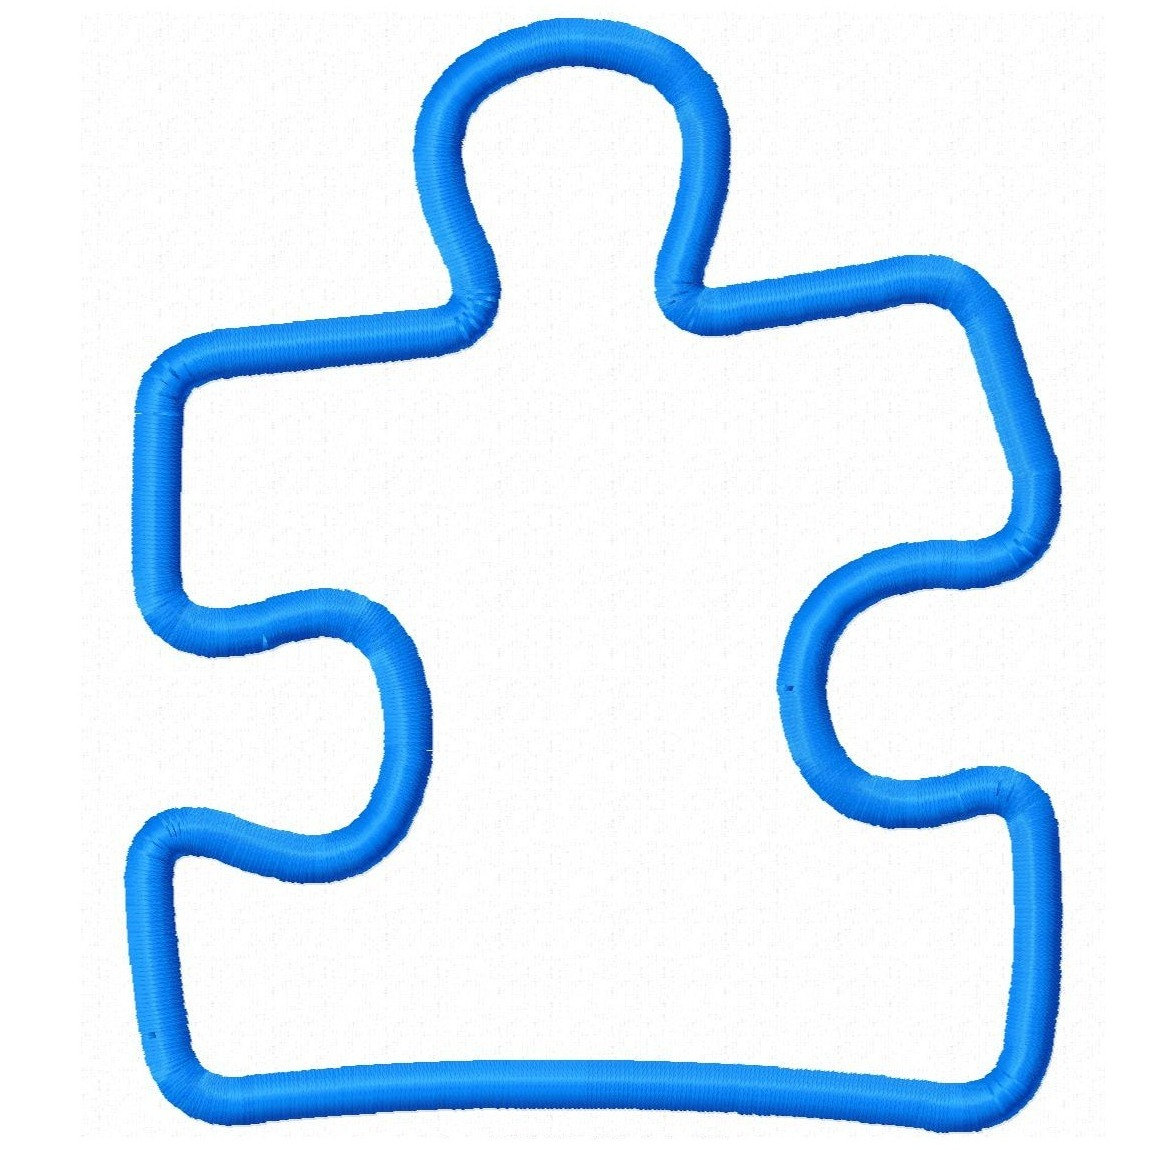 Best Photos of Puzzle Piece Autism Symbol - Autism Puzzle Piece ...